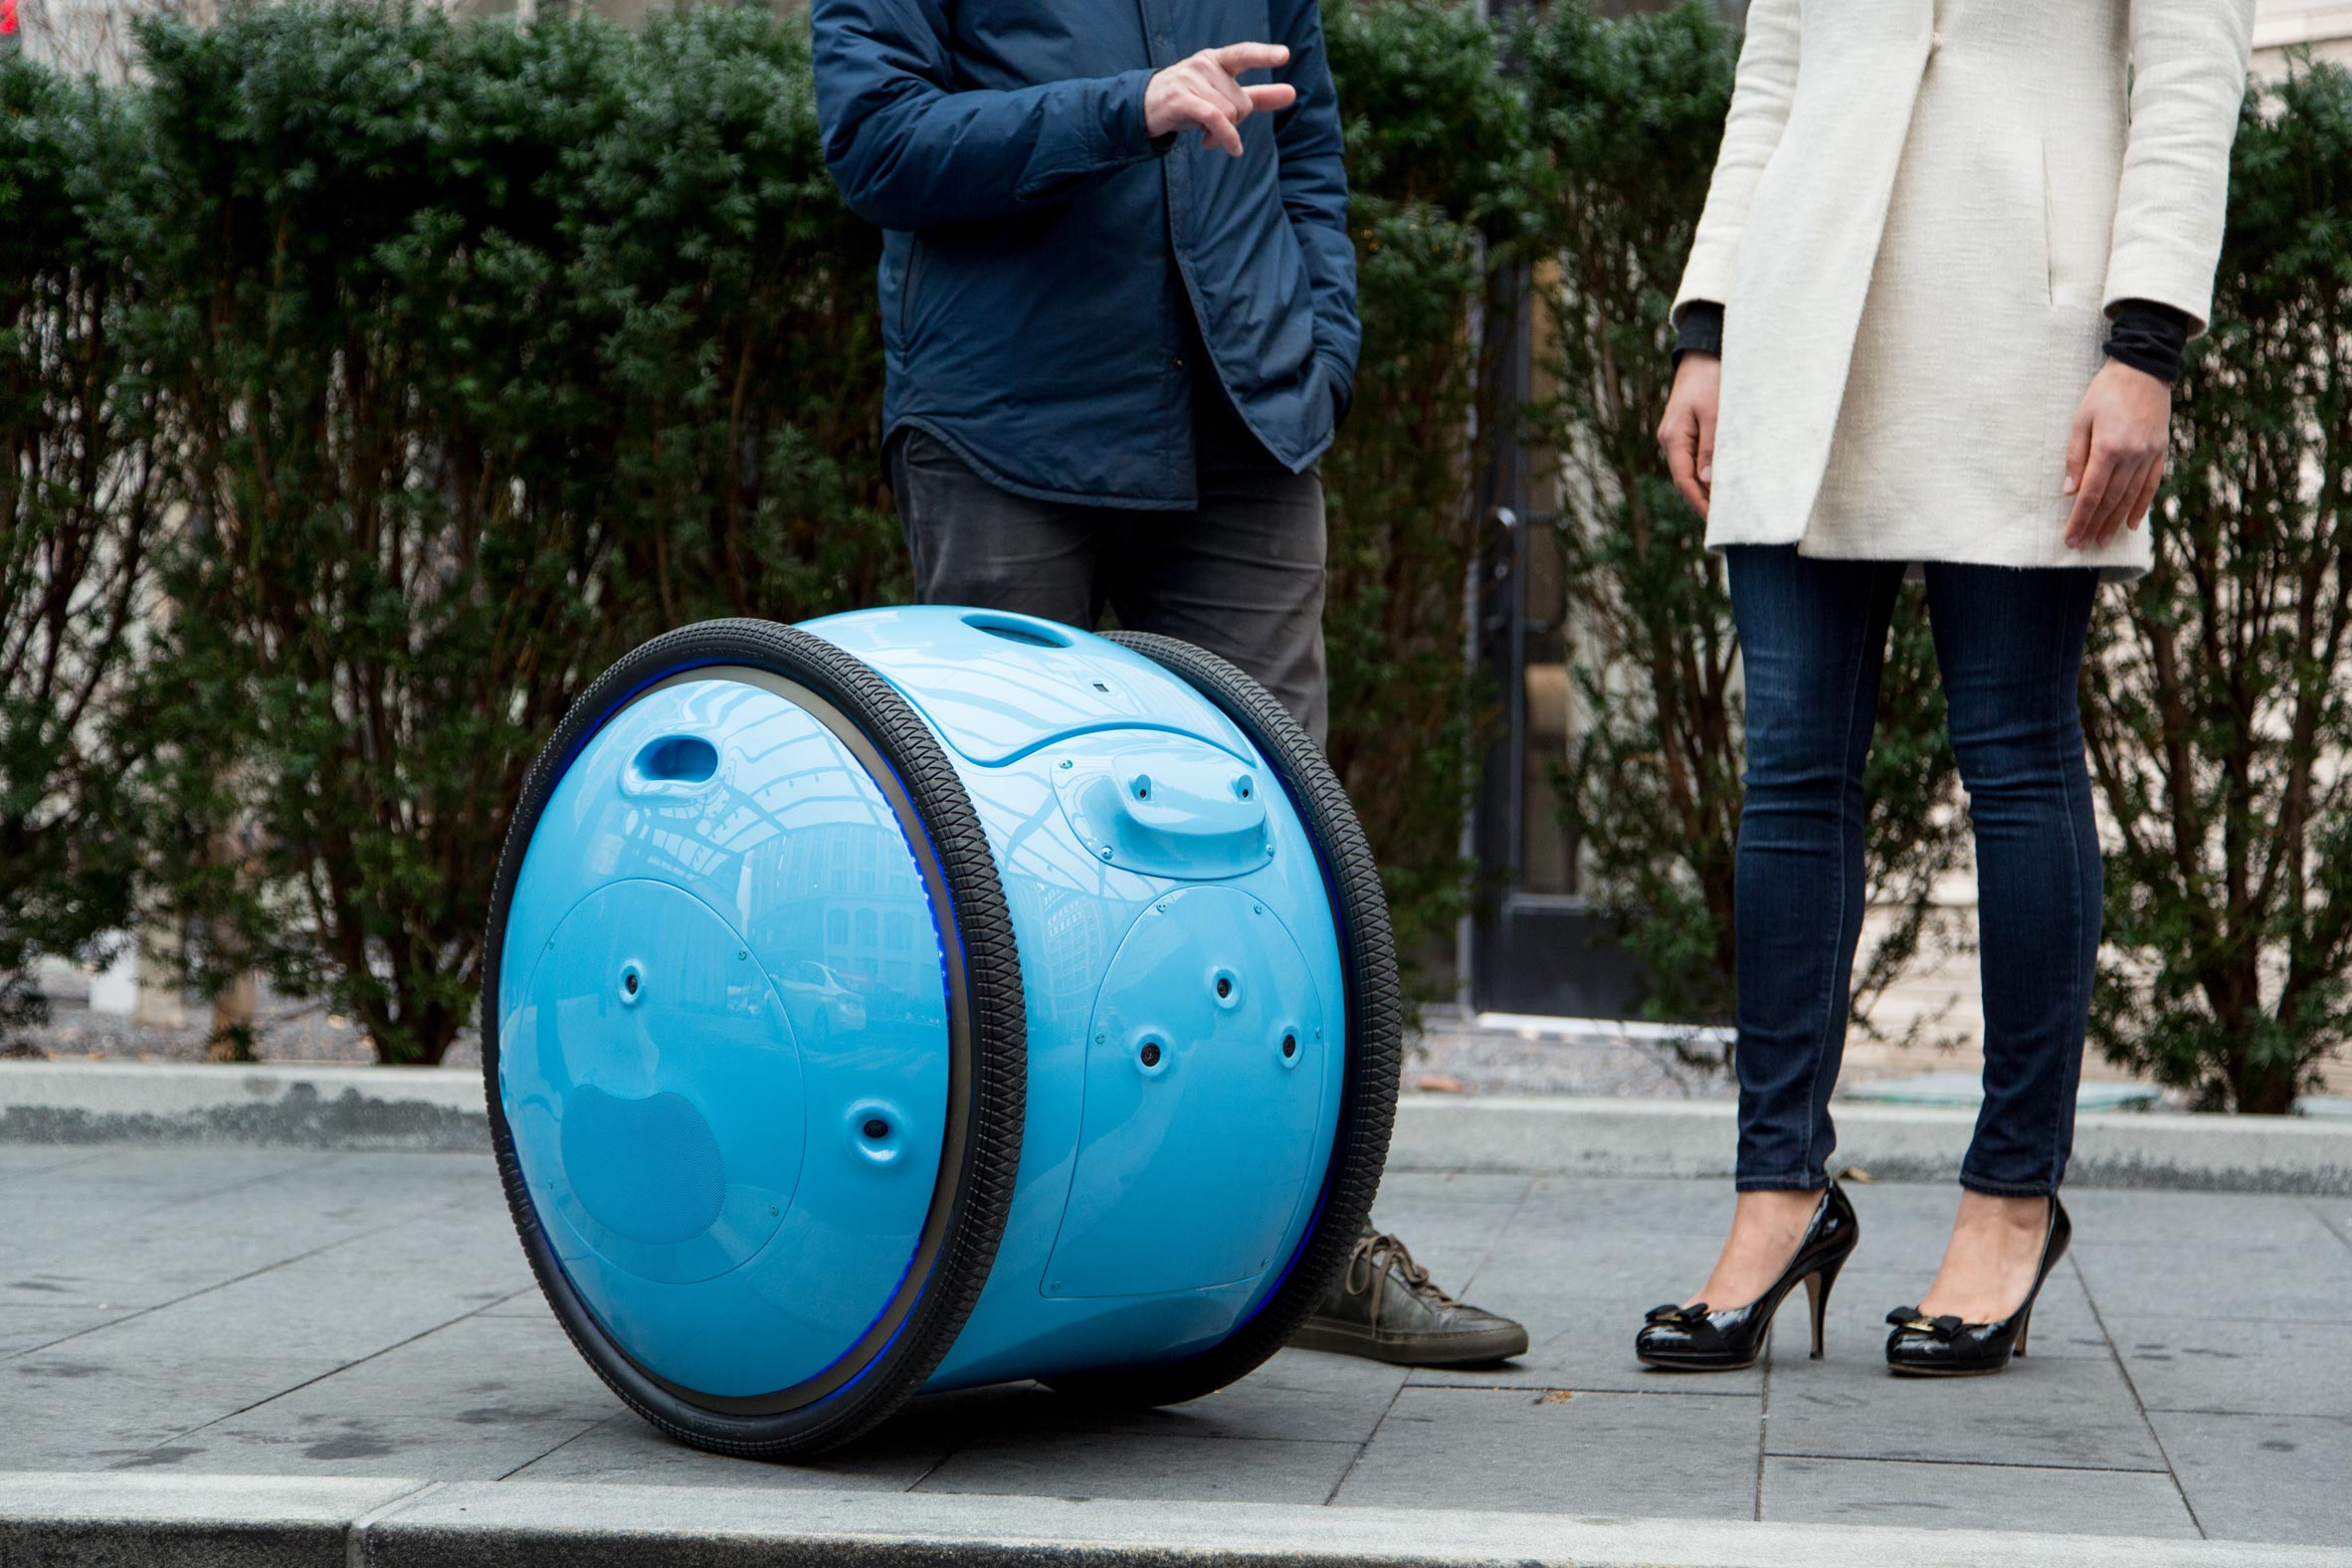 Piaggio introduces Gita personal cargo droid that follows you around